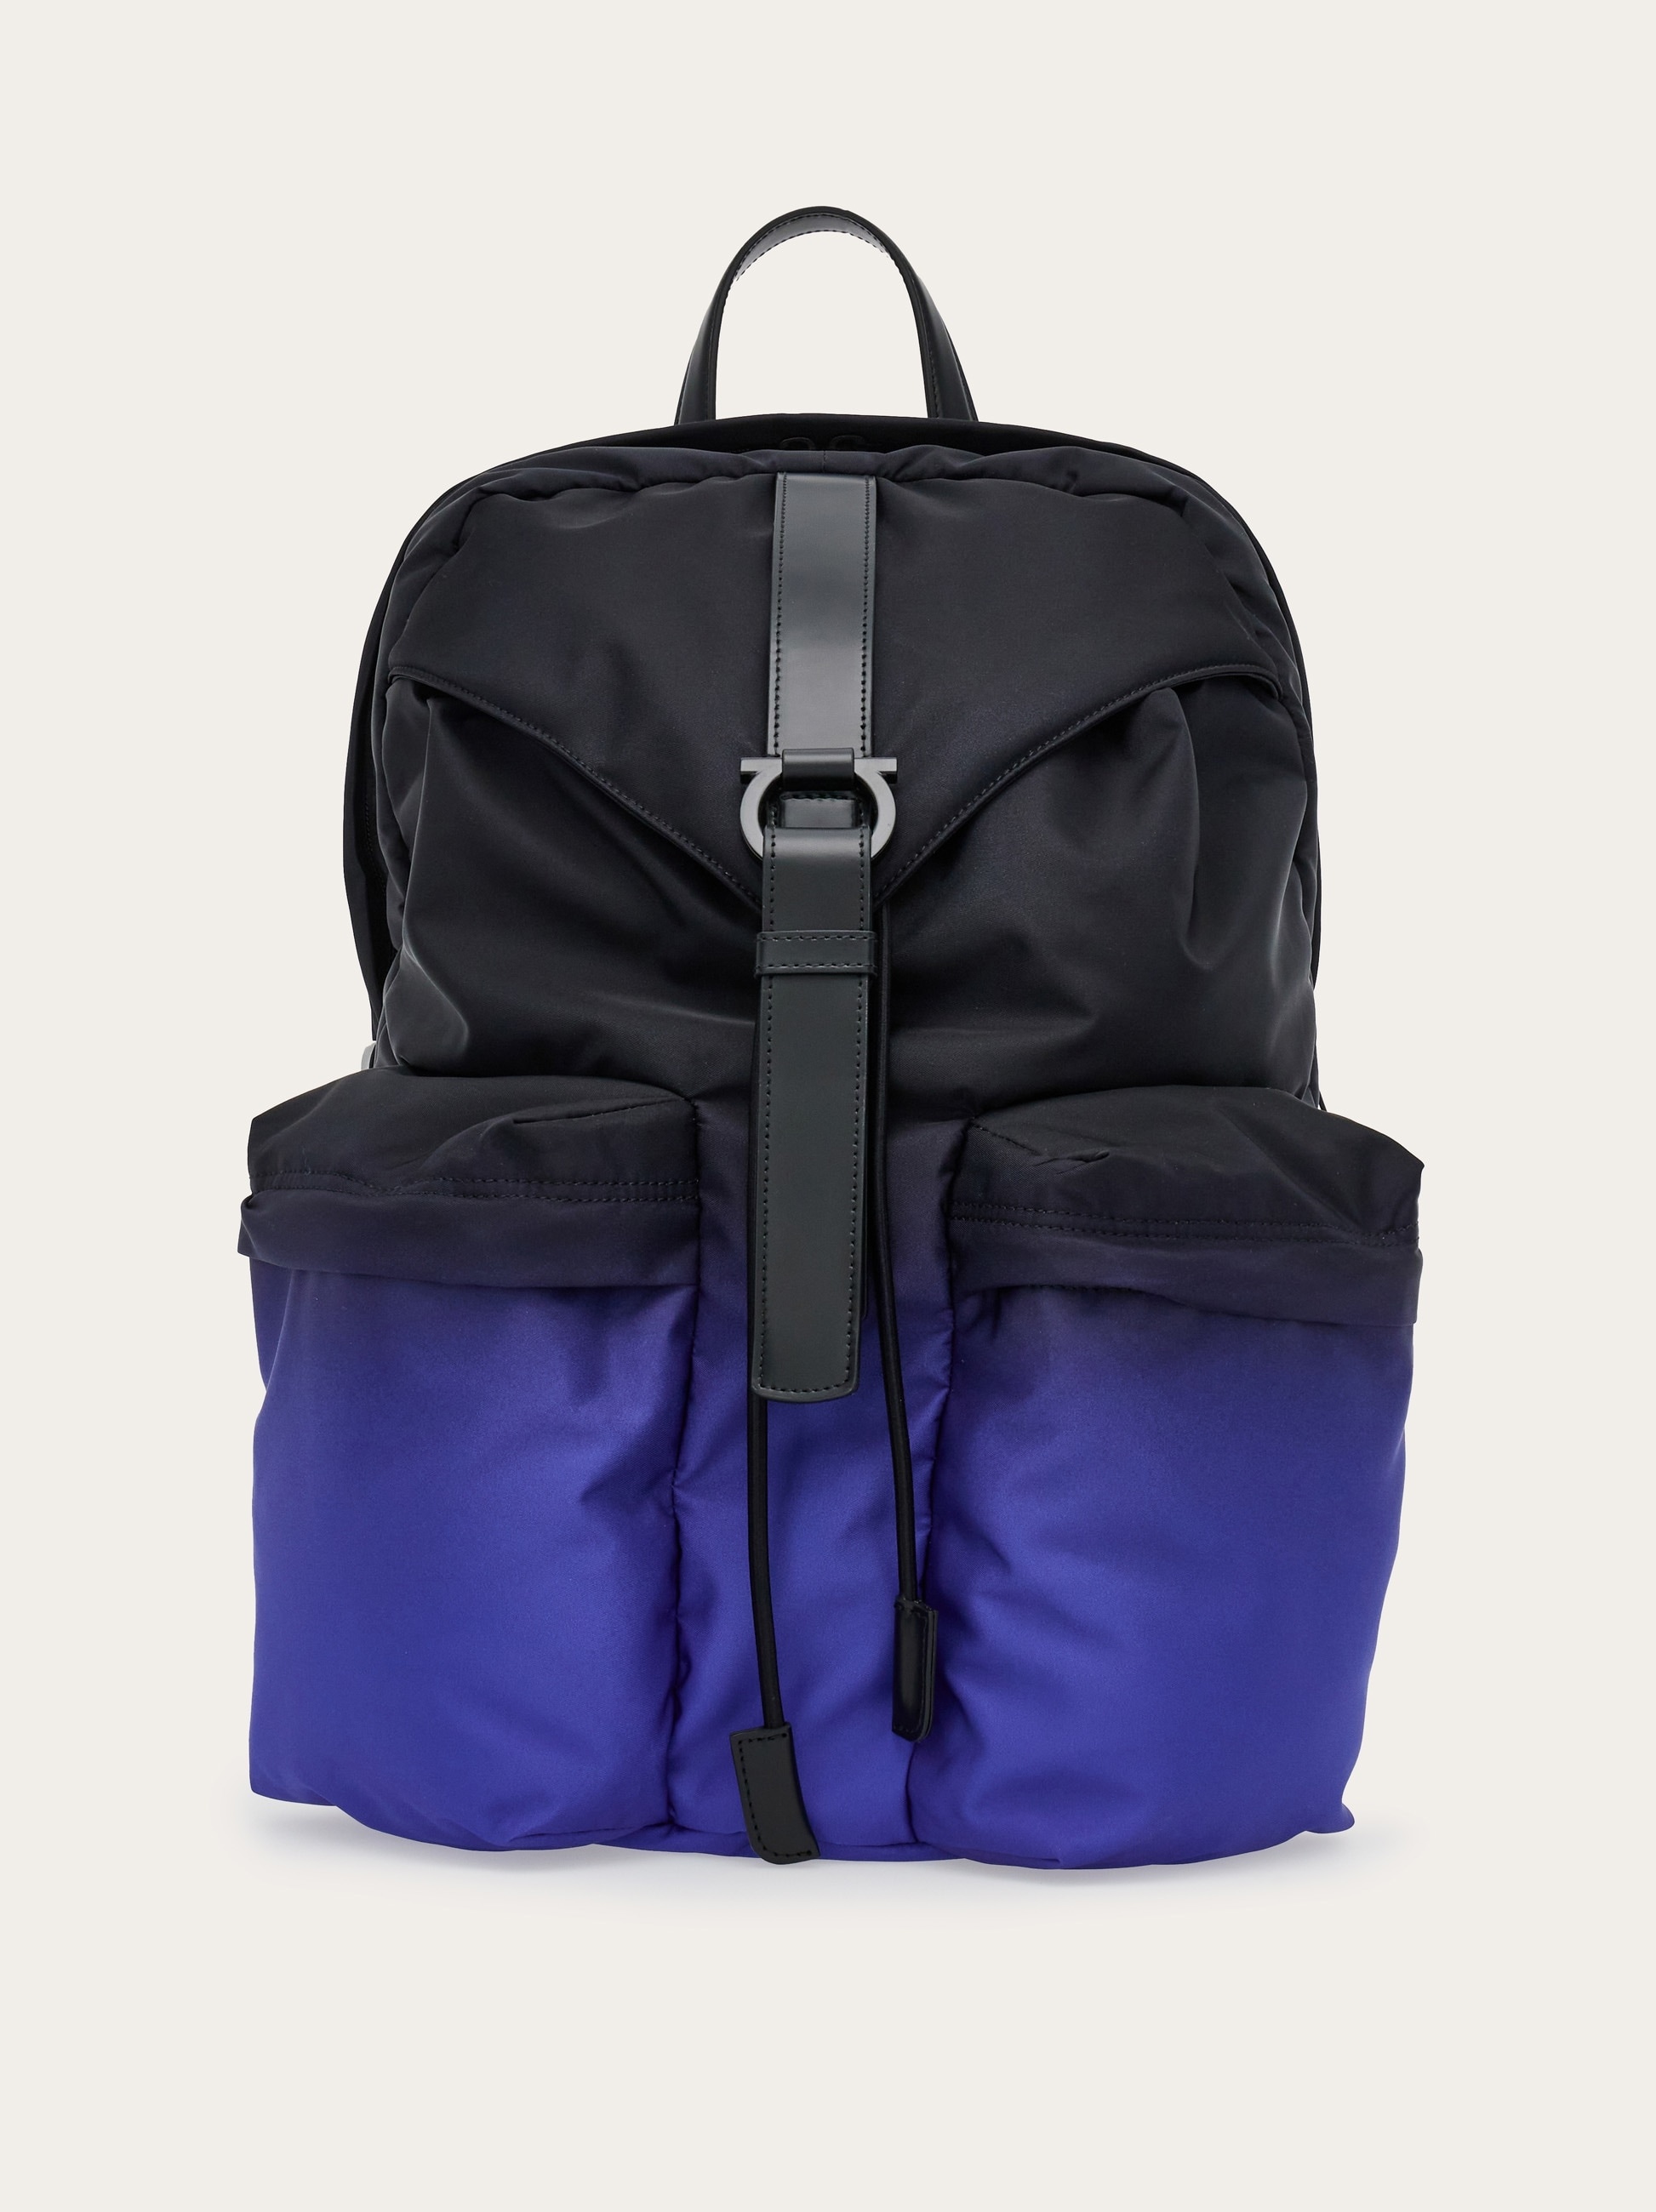 Dual tone backpack - 1